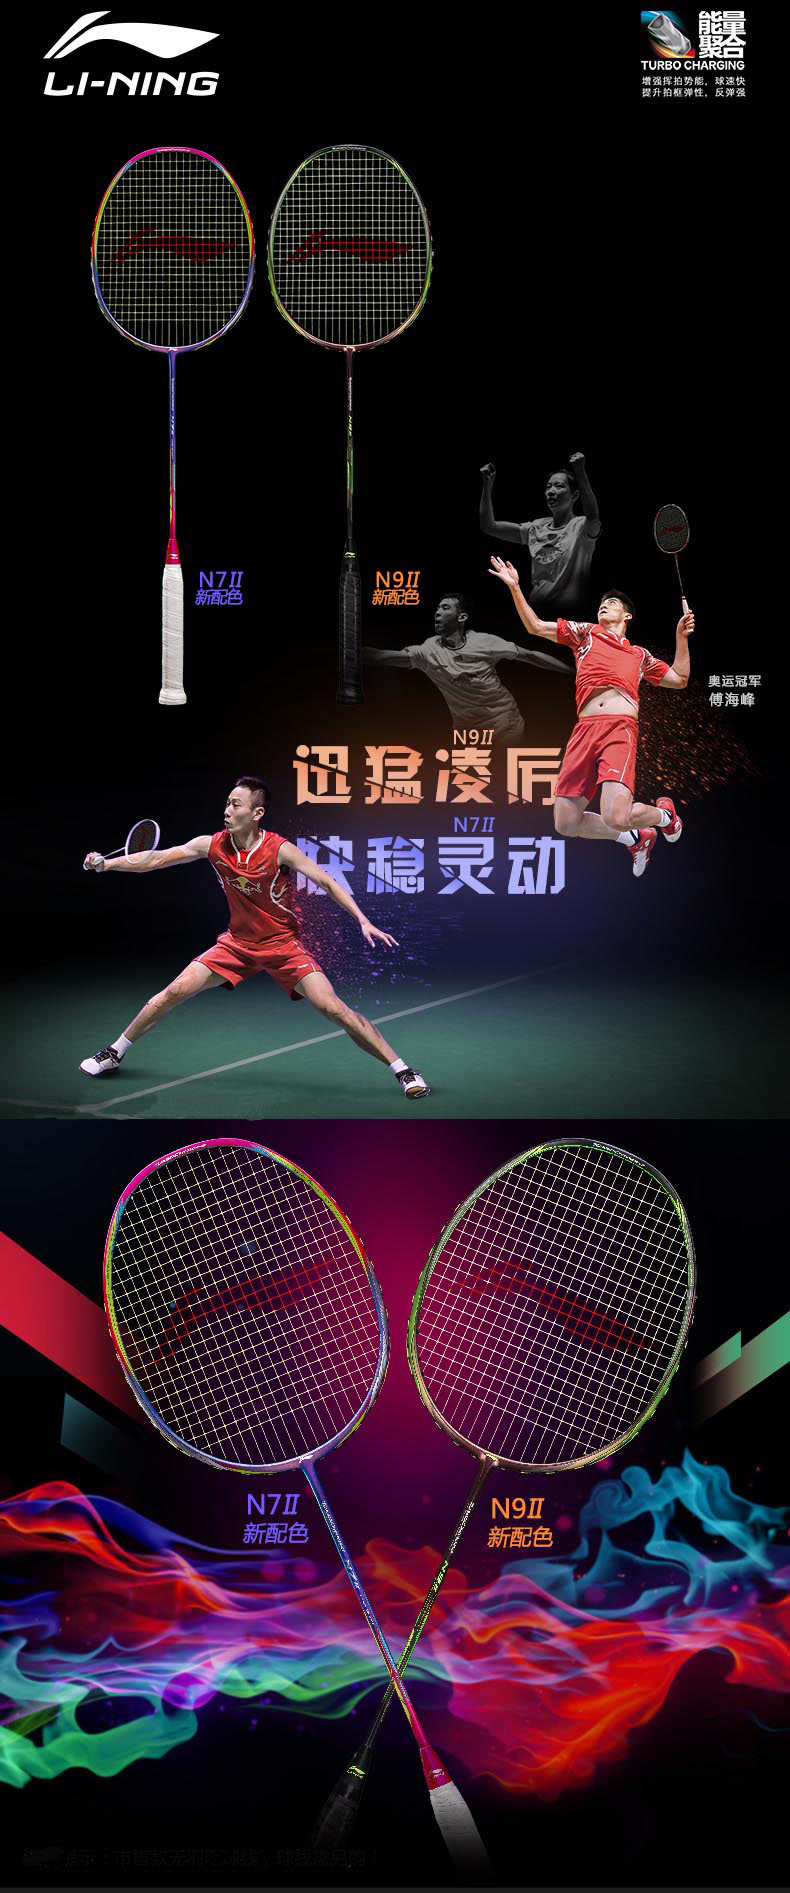 The 15th Australia Sudirman Cup 2107 Li Ning Ultra Sharp Zhang Nan N7 II Badminton Racket